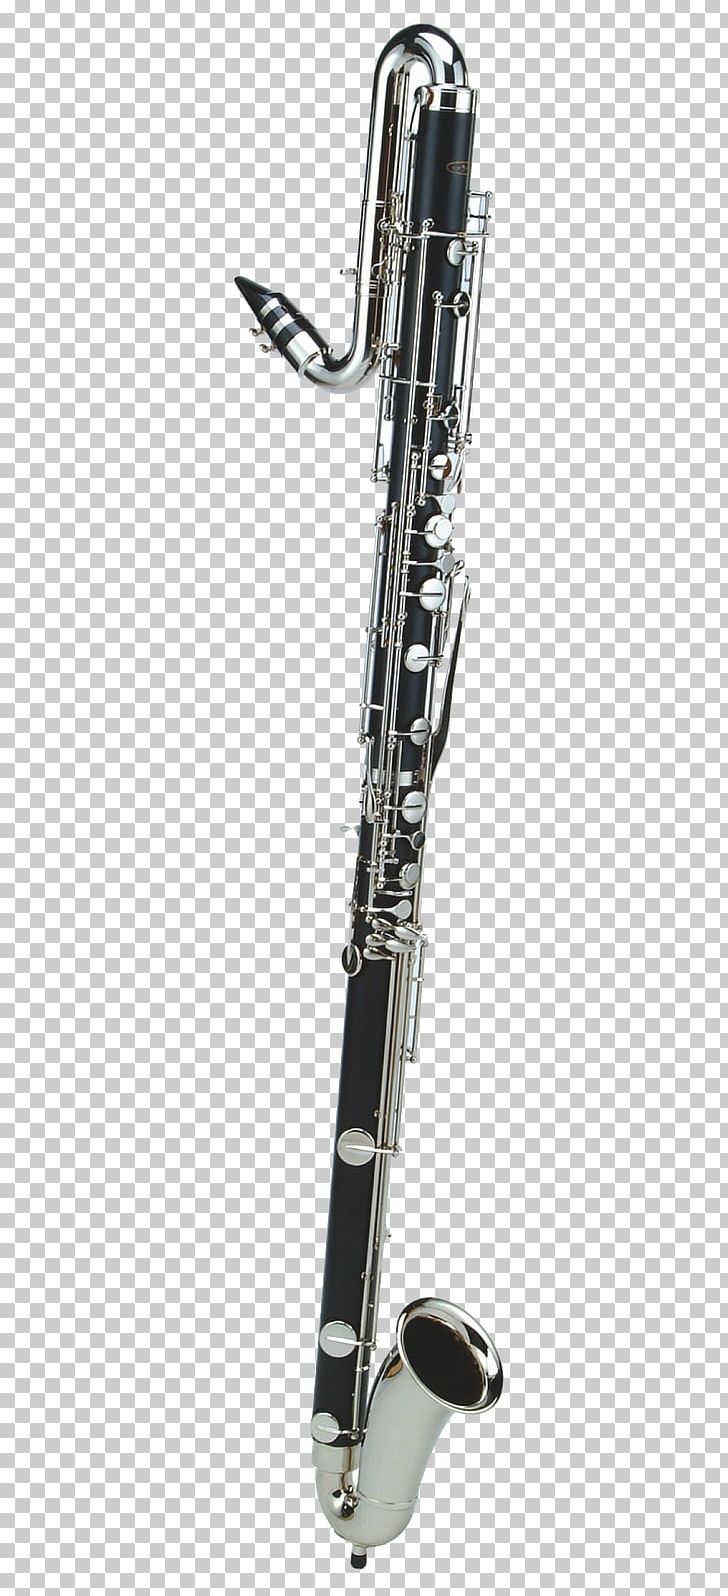 Baritone Saxophone Clarinet Family Cor Anglais Alto Clarinet PNG, Clipart, Alt, Alto, Alto Clarinet, Baritone Saxophone, Bass Clarinet Free PNG Download